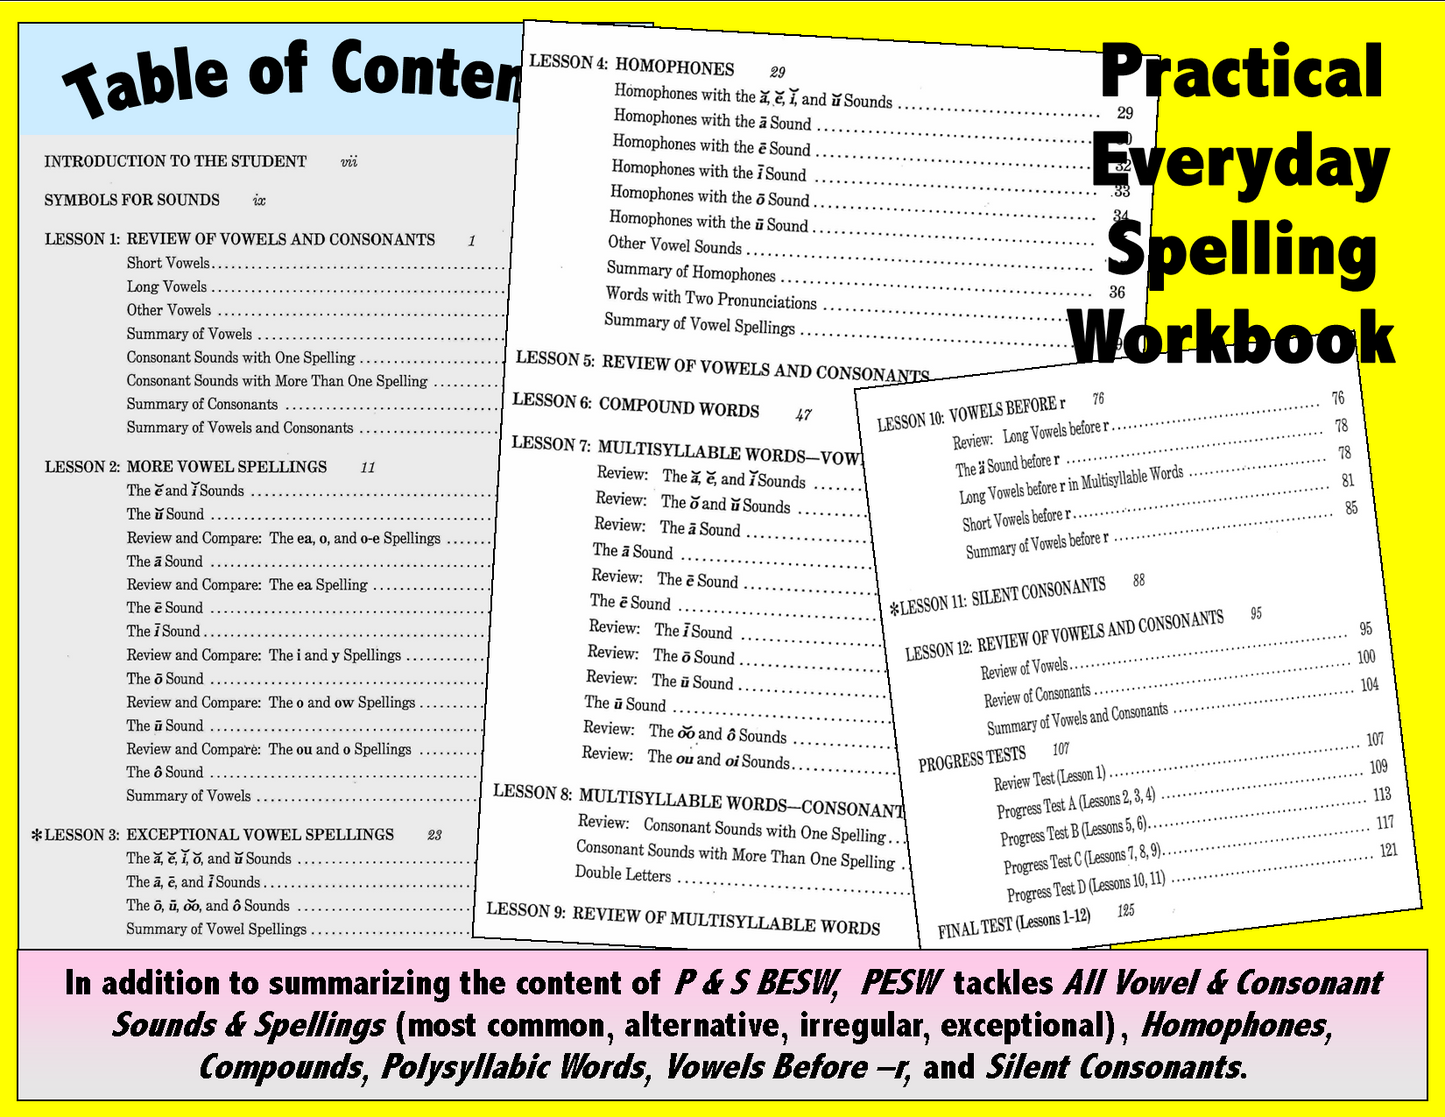 B. Spelling - Practical Workbook, PDF Download Version